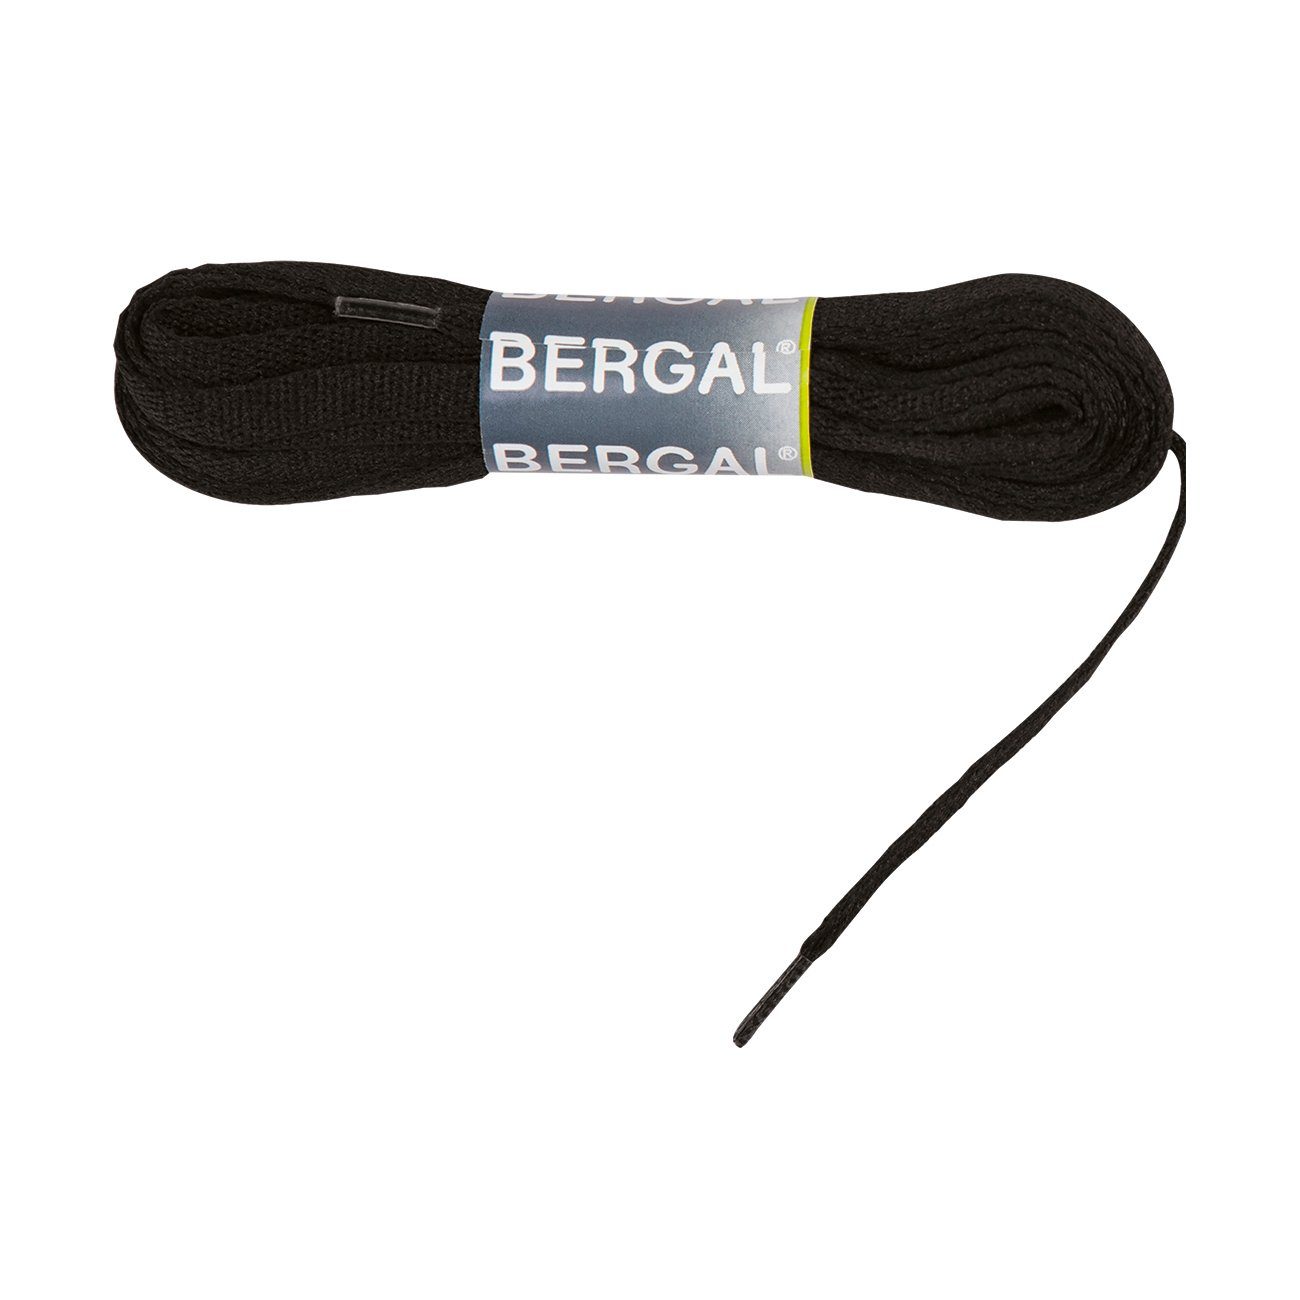 Bergal Schnürsenkel Schnürsenkel / Schuhbänder für Eislaufschuhe, Rollschuhe und Inlineskater Schwarz